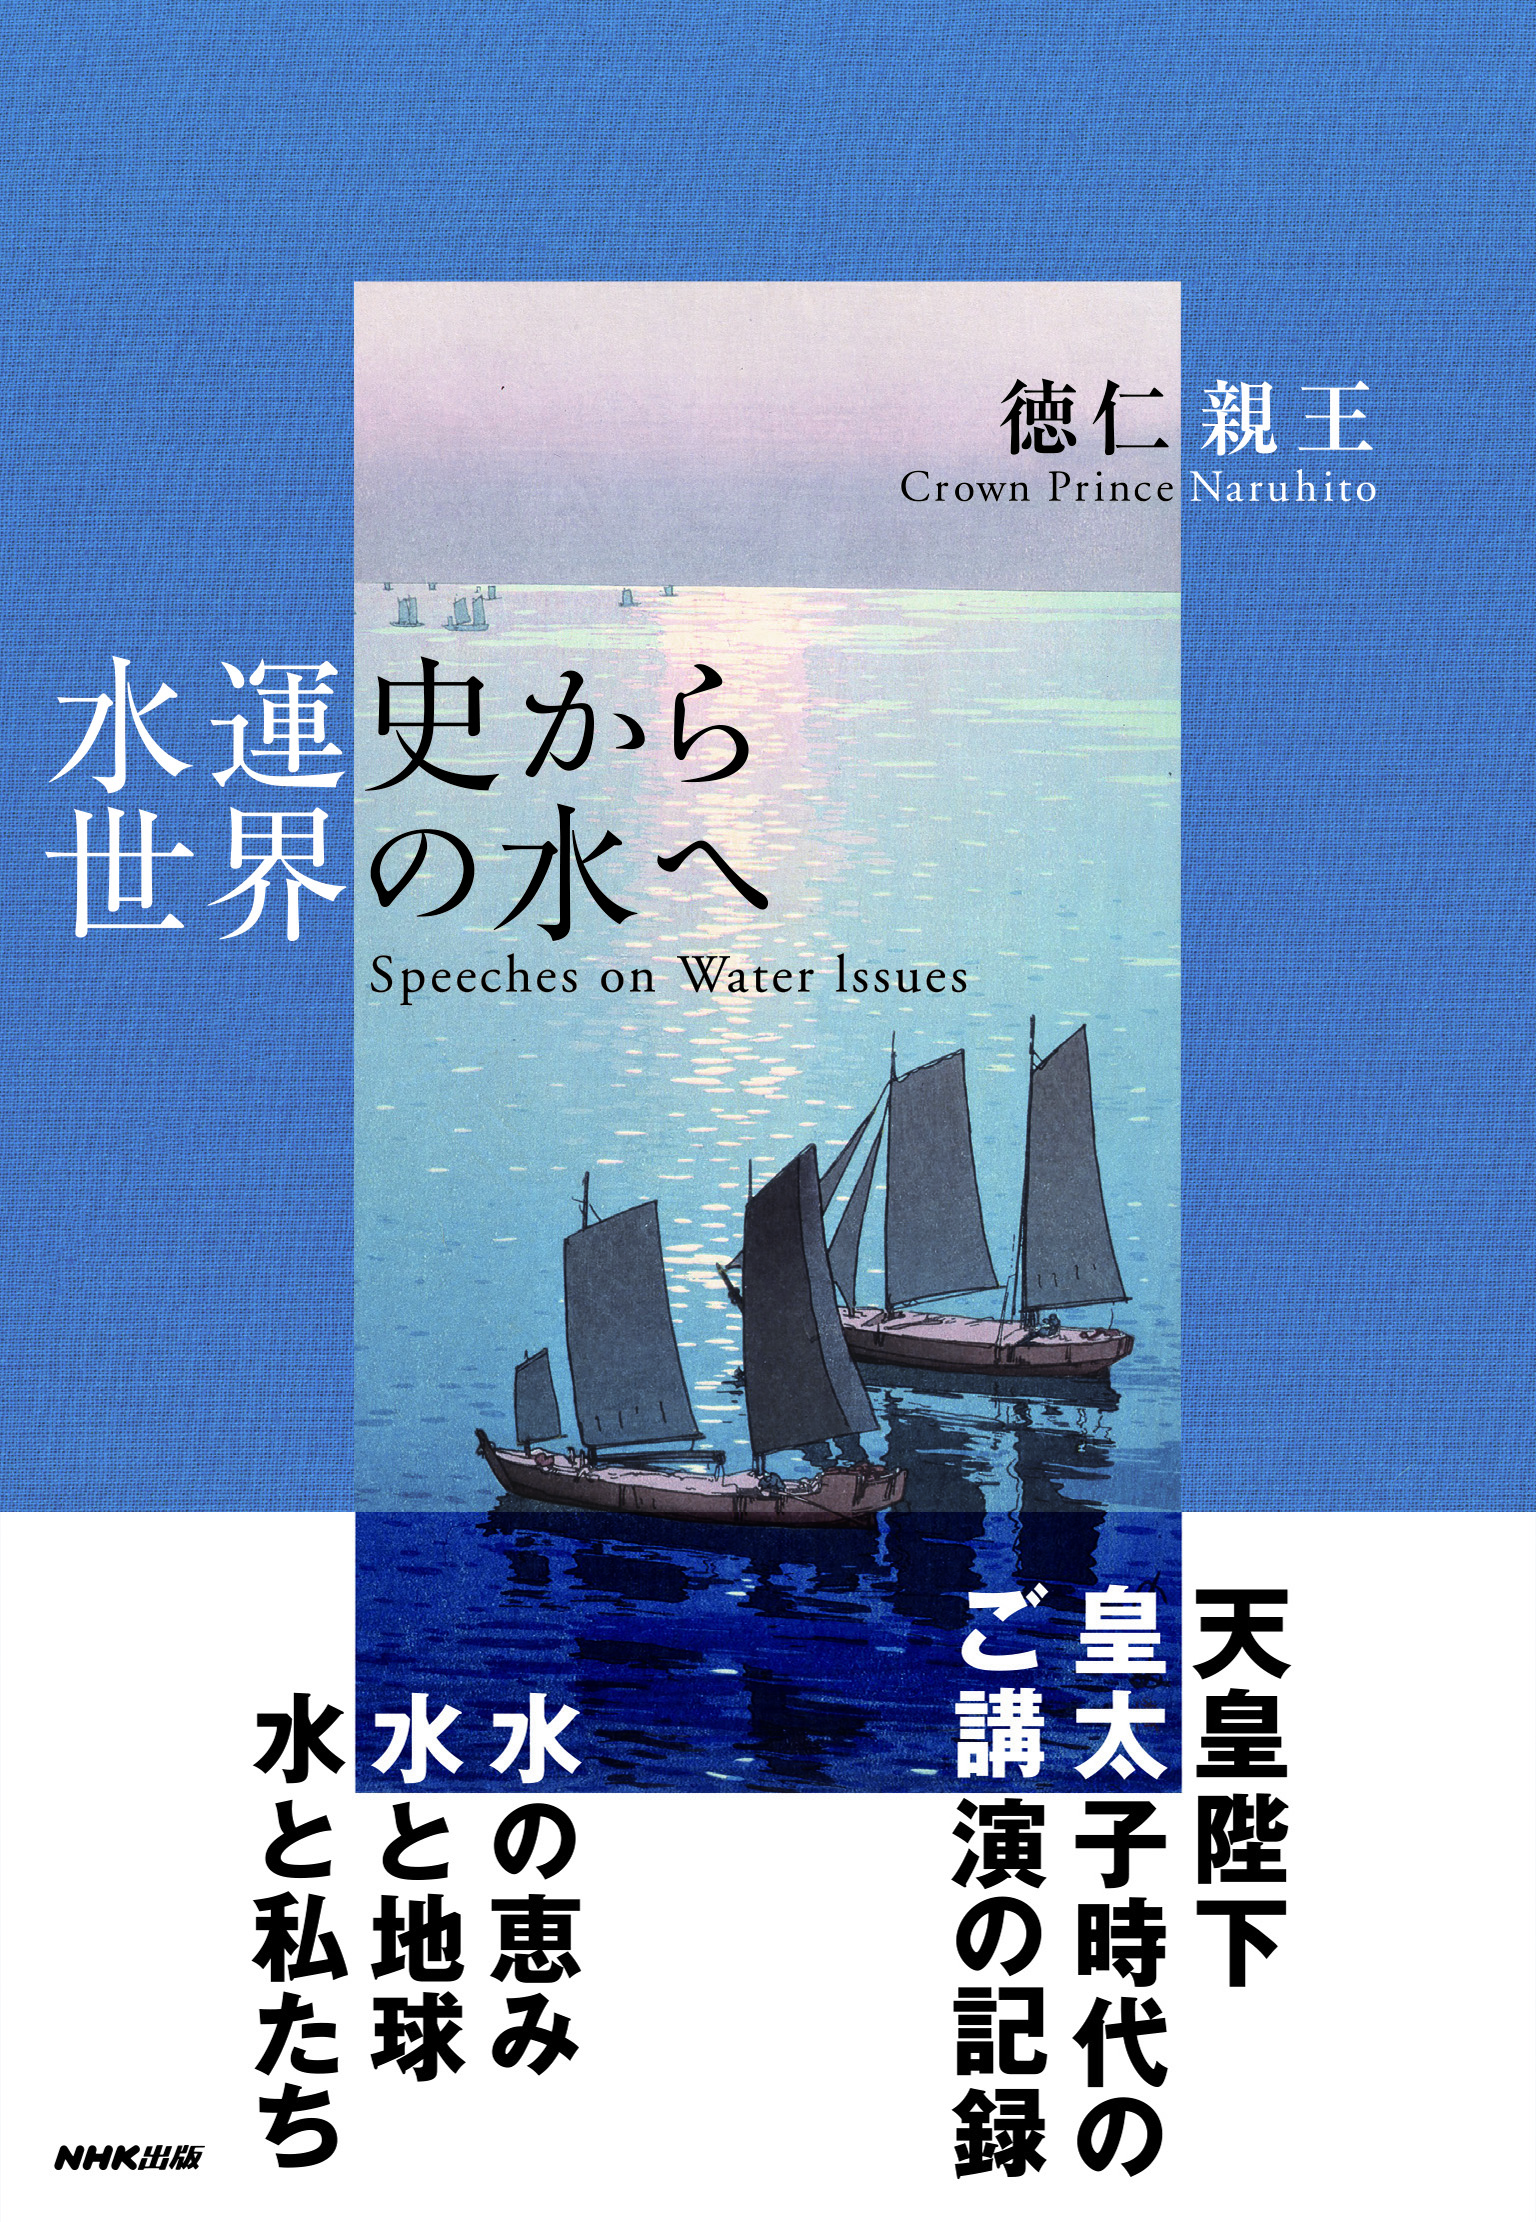 20191210BookBerak__Book_Cover_水運史から世界の水へ_カハ_ー表1オビ表1 (1).jpg